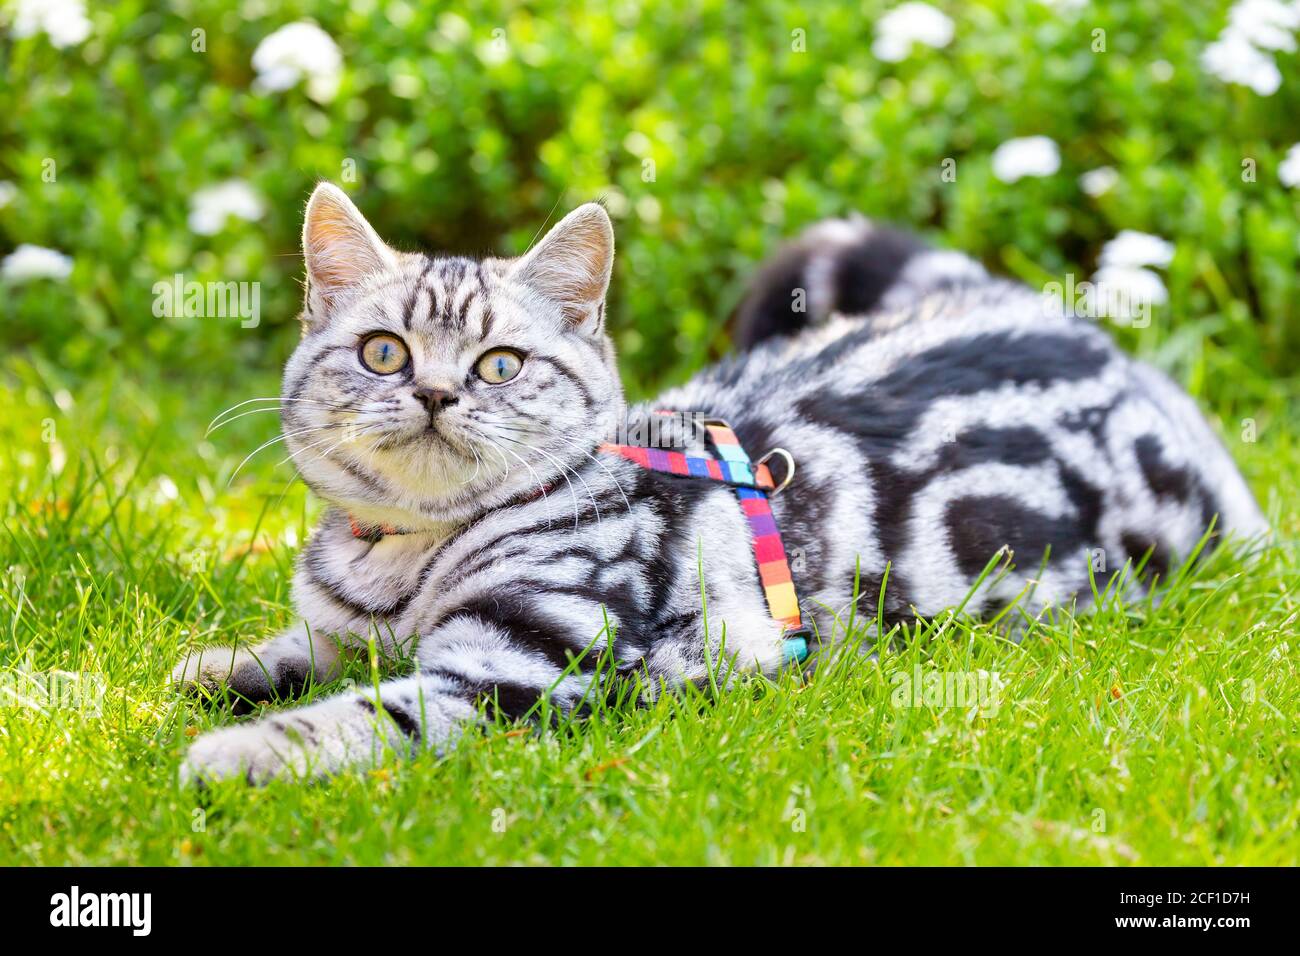 Giovane britannico capelli corti argento tabby capelli corti gatto mentire in giardino verde Foto Stock